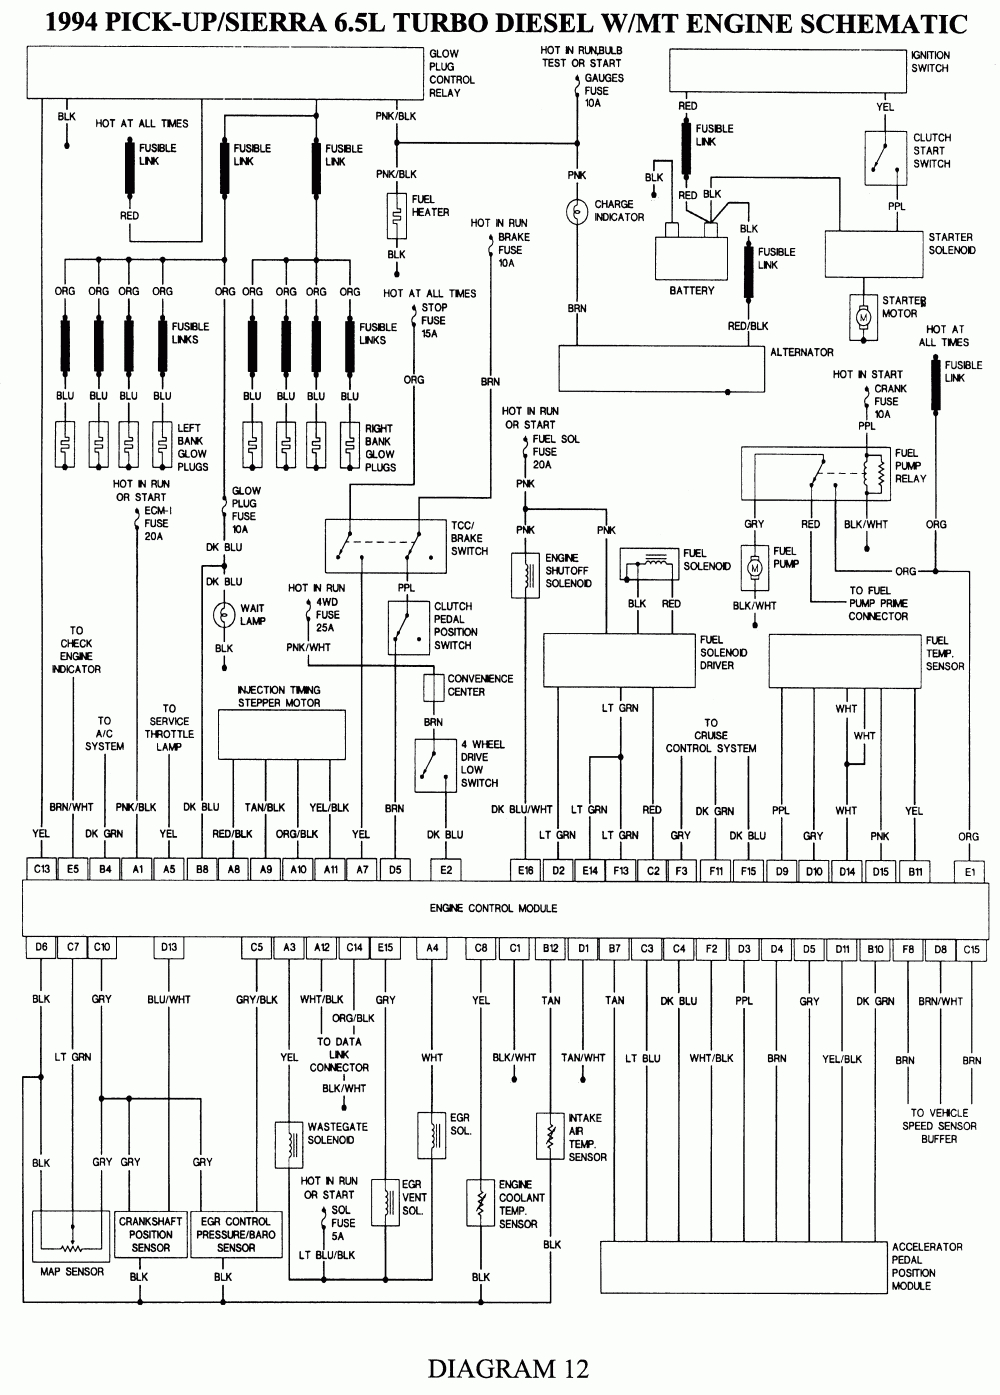 Repair Guides | Wiring Diagrams | Wiring Diagrams | Autozone - 1993 Chevy Silverado Wiring Diagram